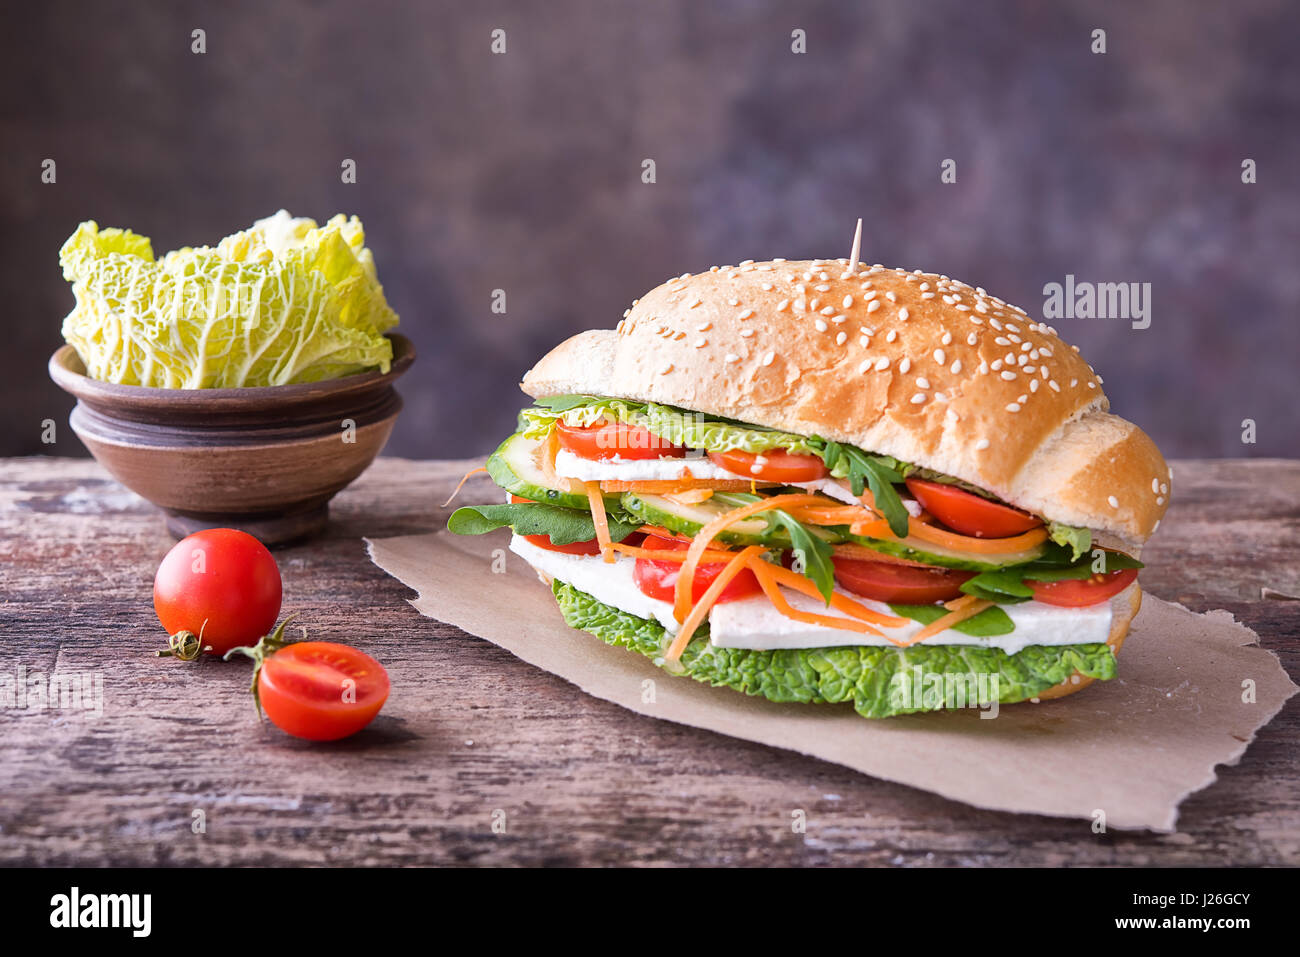 Leckere bunte Sandwich weiß-Brot mit Sesam, Karotte, Gurke, weißer Käse, Kraut und Rucola Salat auf ein Stück Packpapier Stockfoto